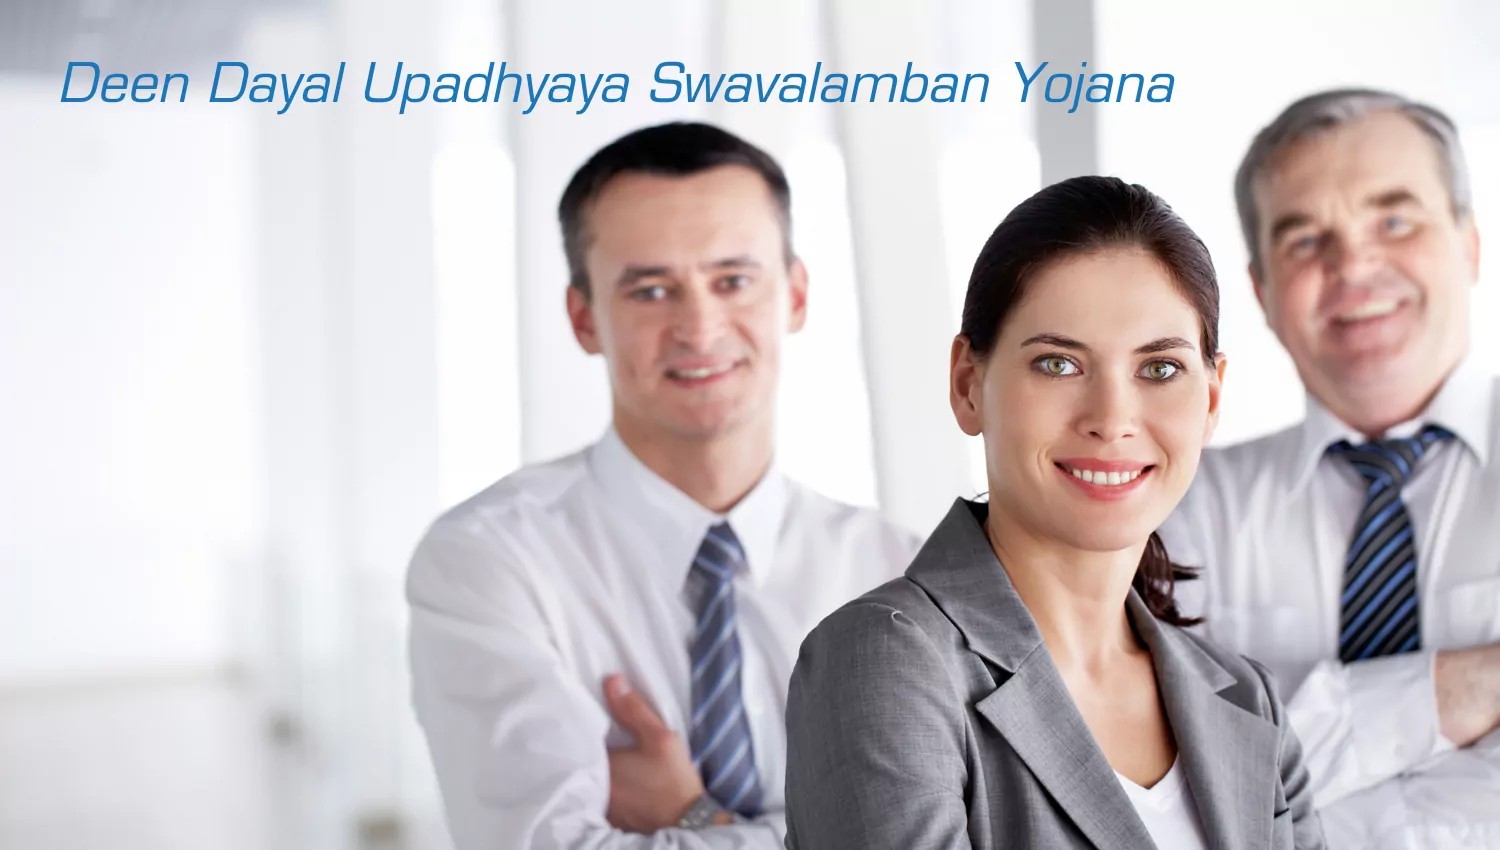 Deen Dayal Upadhyaya Swavalamban Yojana Startup Loan Scheme 2020